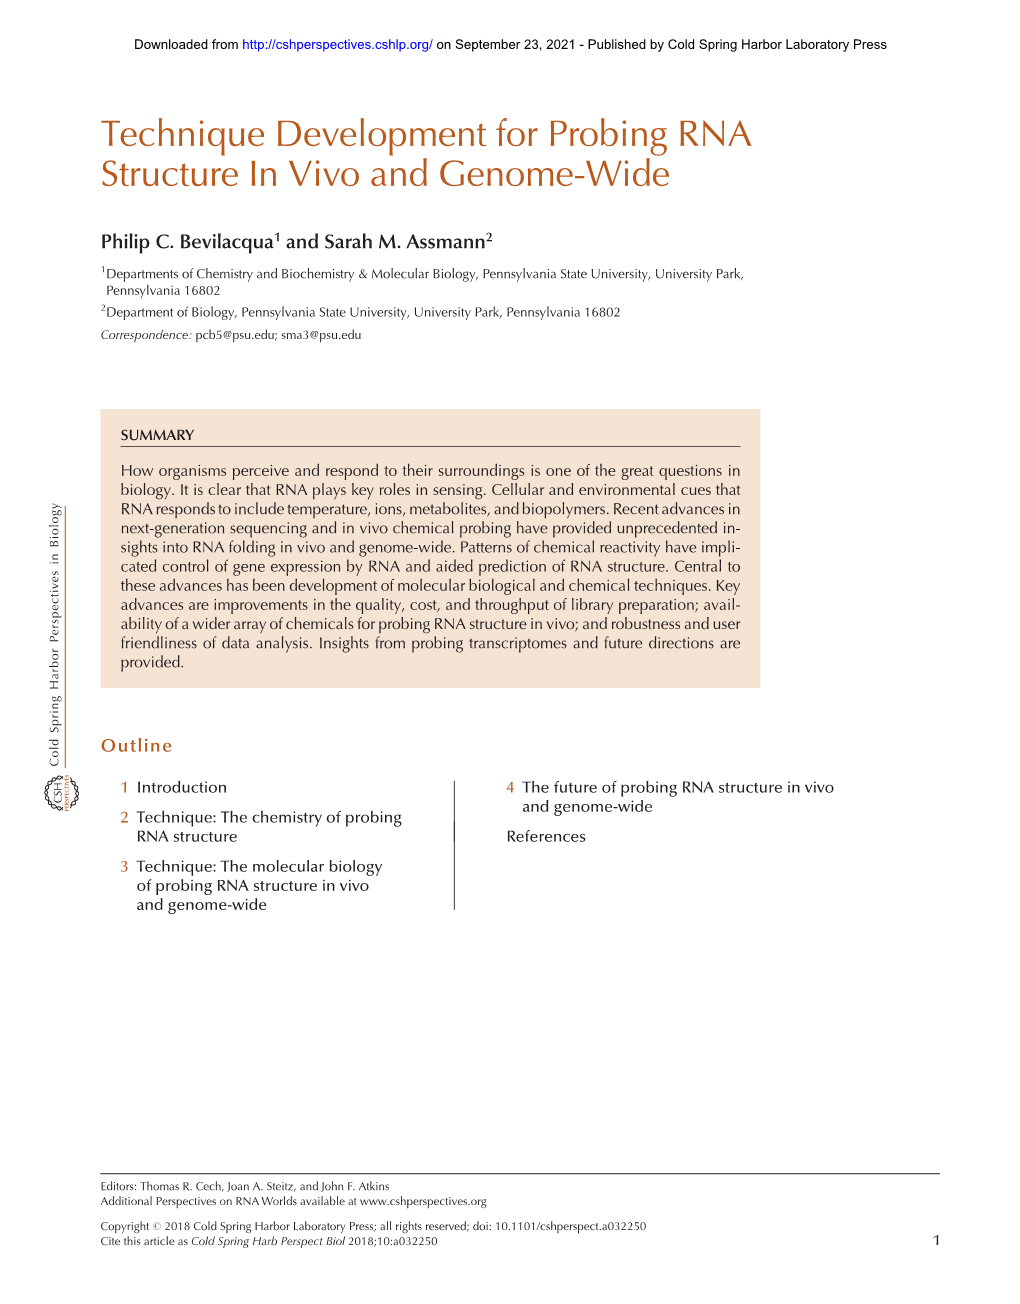 Technique Development for Probing RNA Structure in Vivo and Genome-Wide